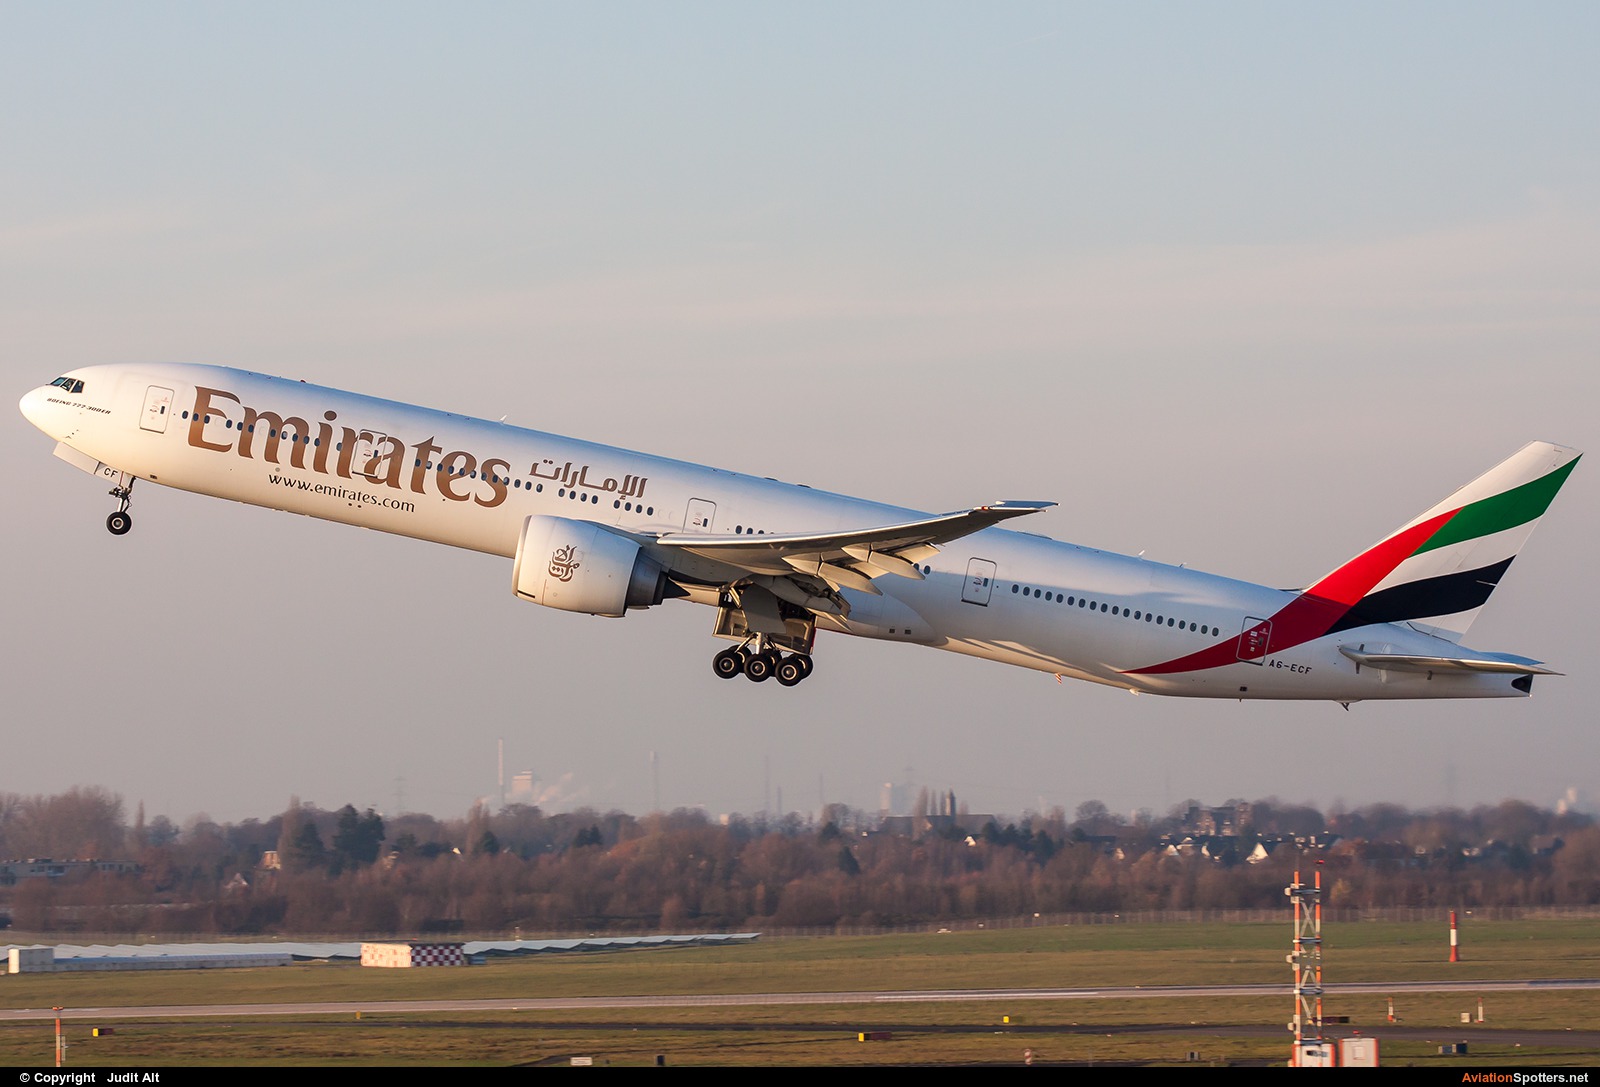 Emirates Airlines  -  777-300ER  (A6-ECF) By Judit Alt (Judit)